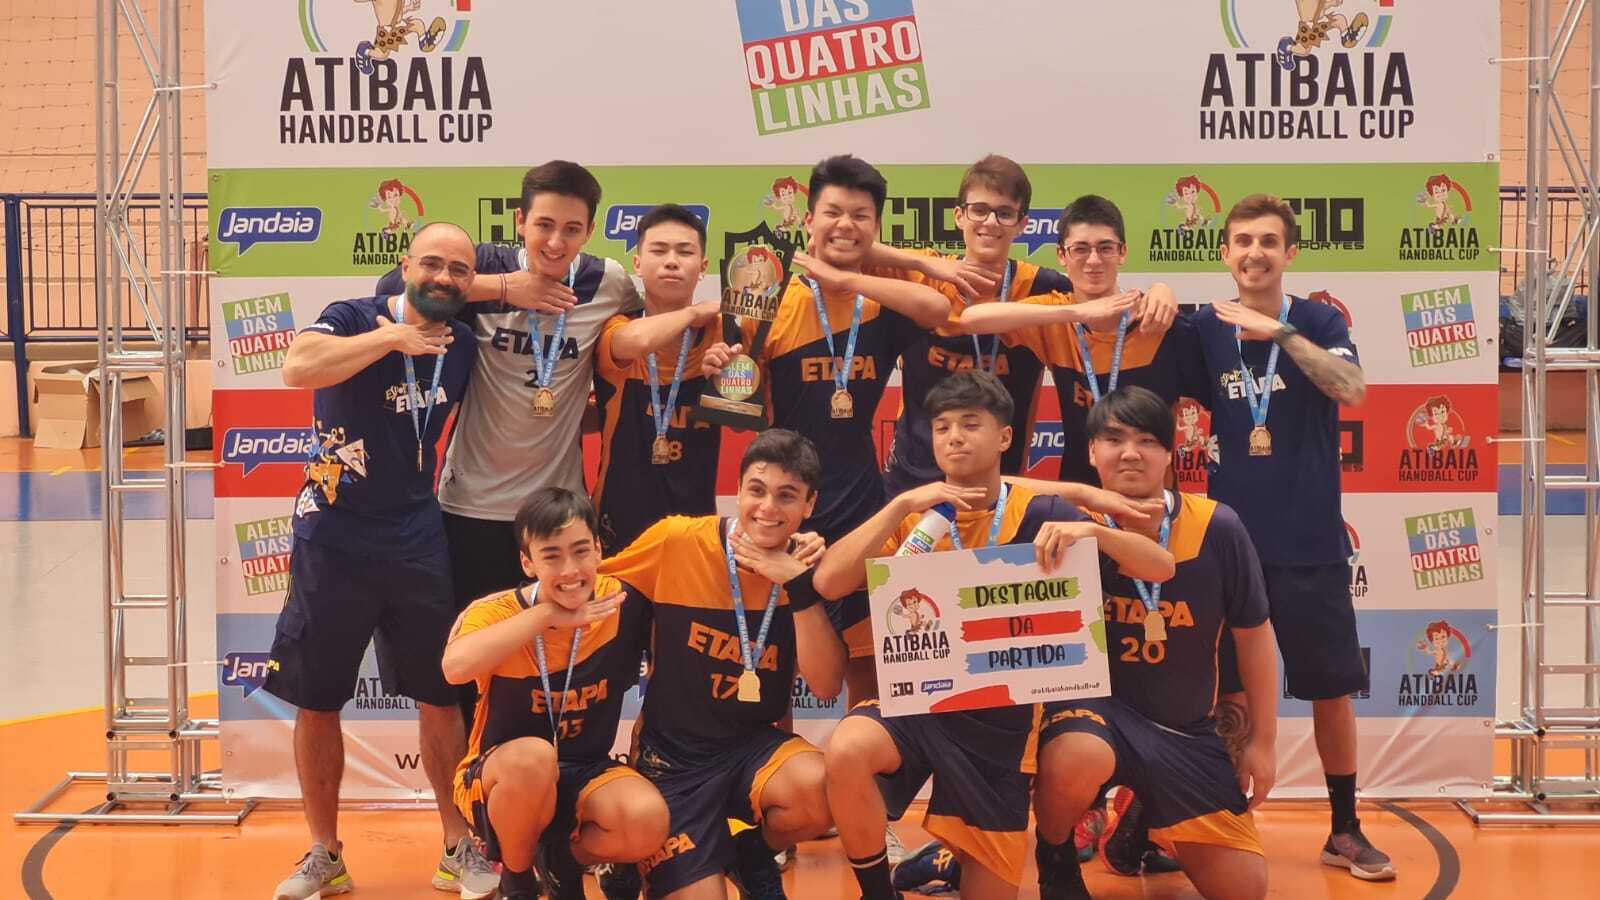 O Colégio Etapa levou três equipes para o Atibaia Handball Cup 2022 e conquistou o troféu da categoria Cadete Masculino.